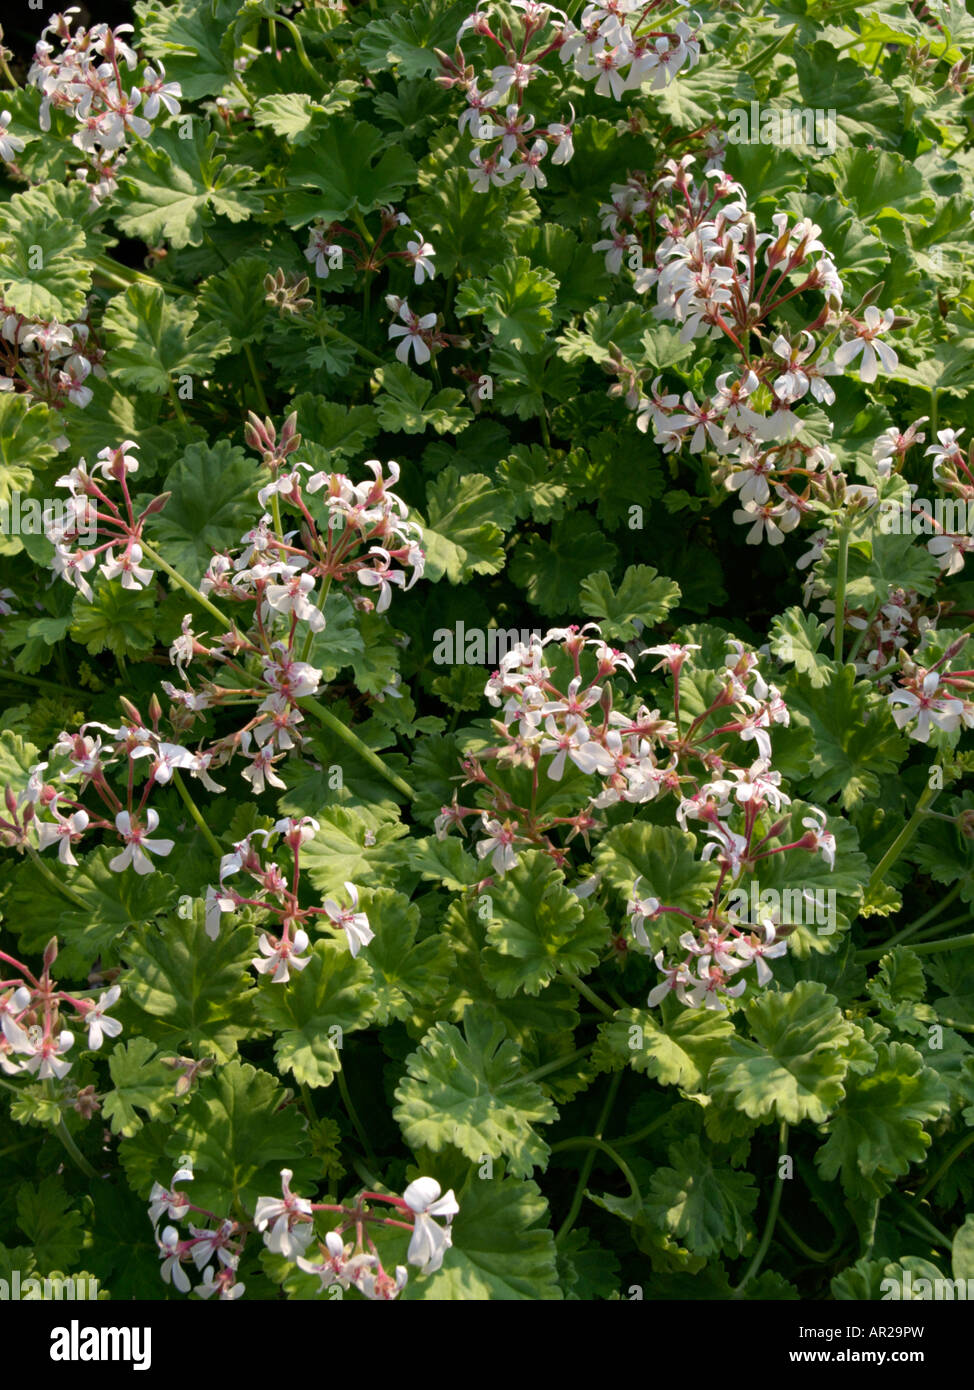 Scented pelargonium (Pelargonium x fragans 'Creamy Nutmeg') Stock Photo